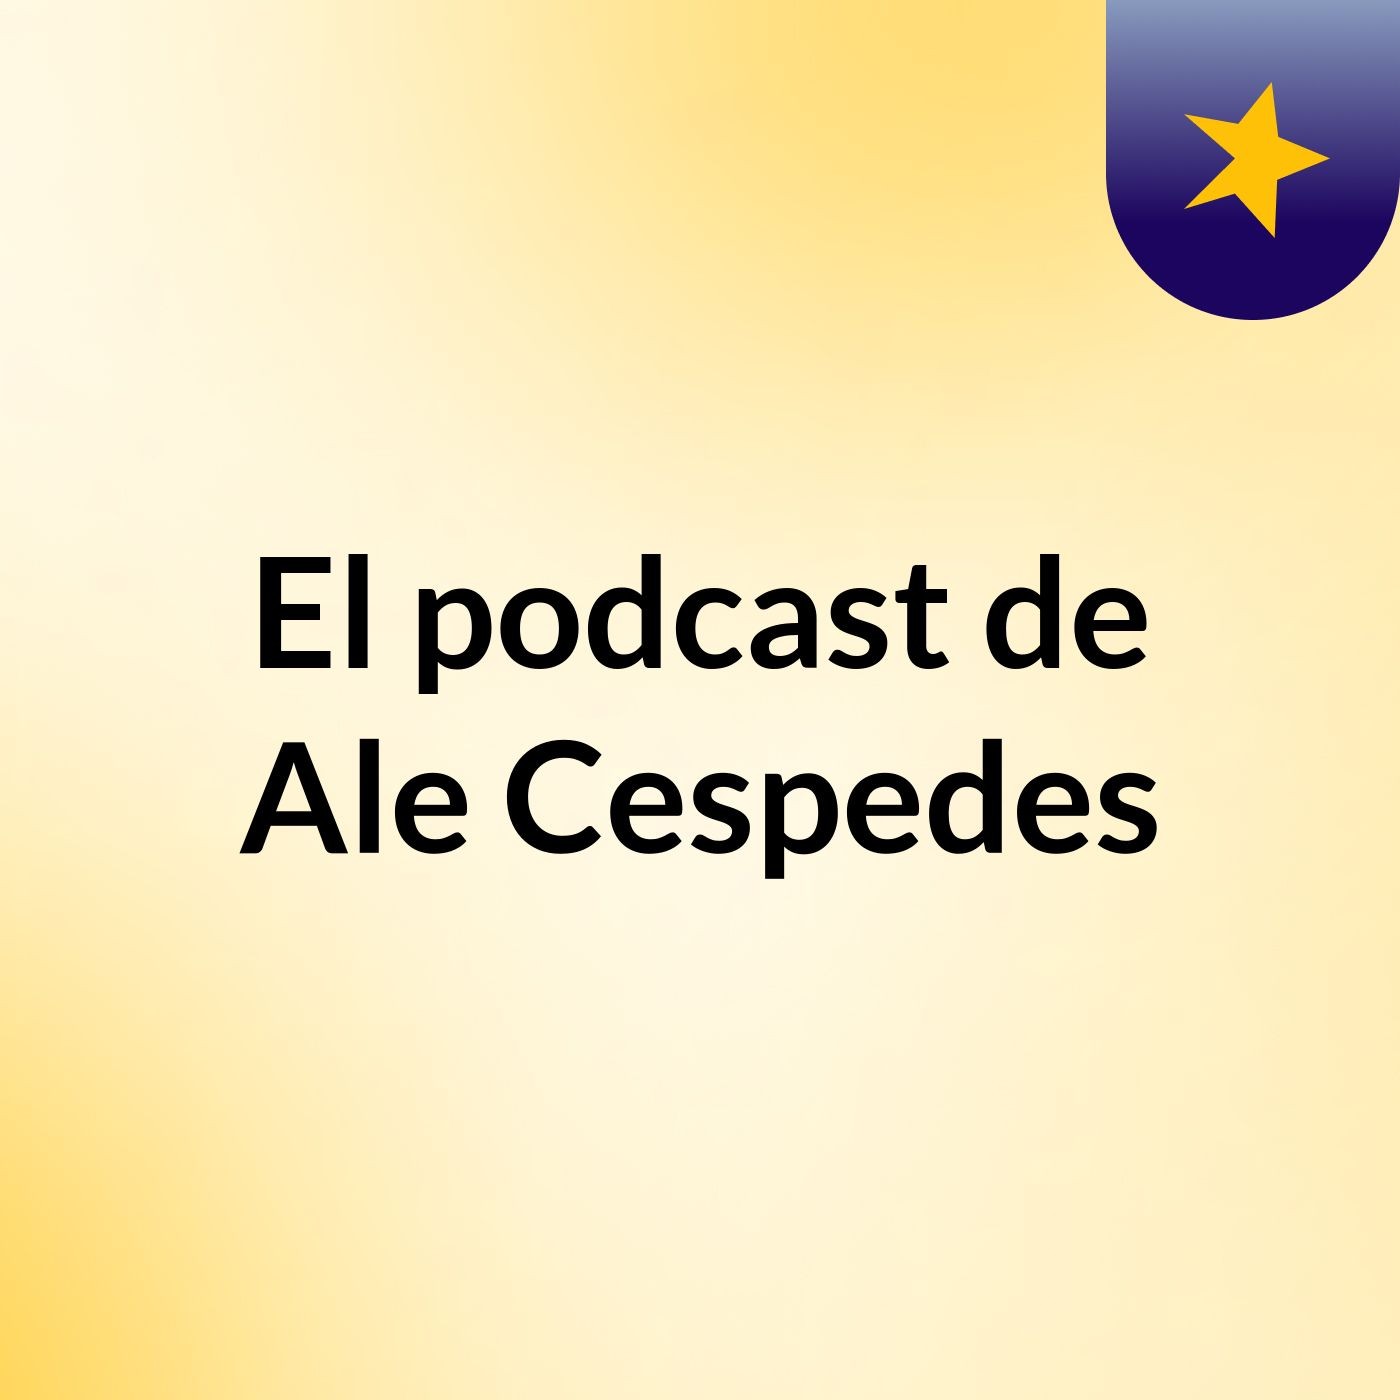 El podcast de Ale Cespedes